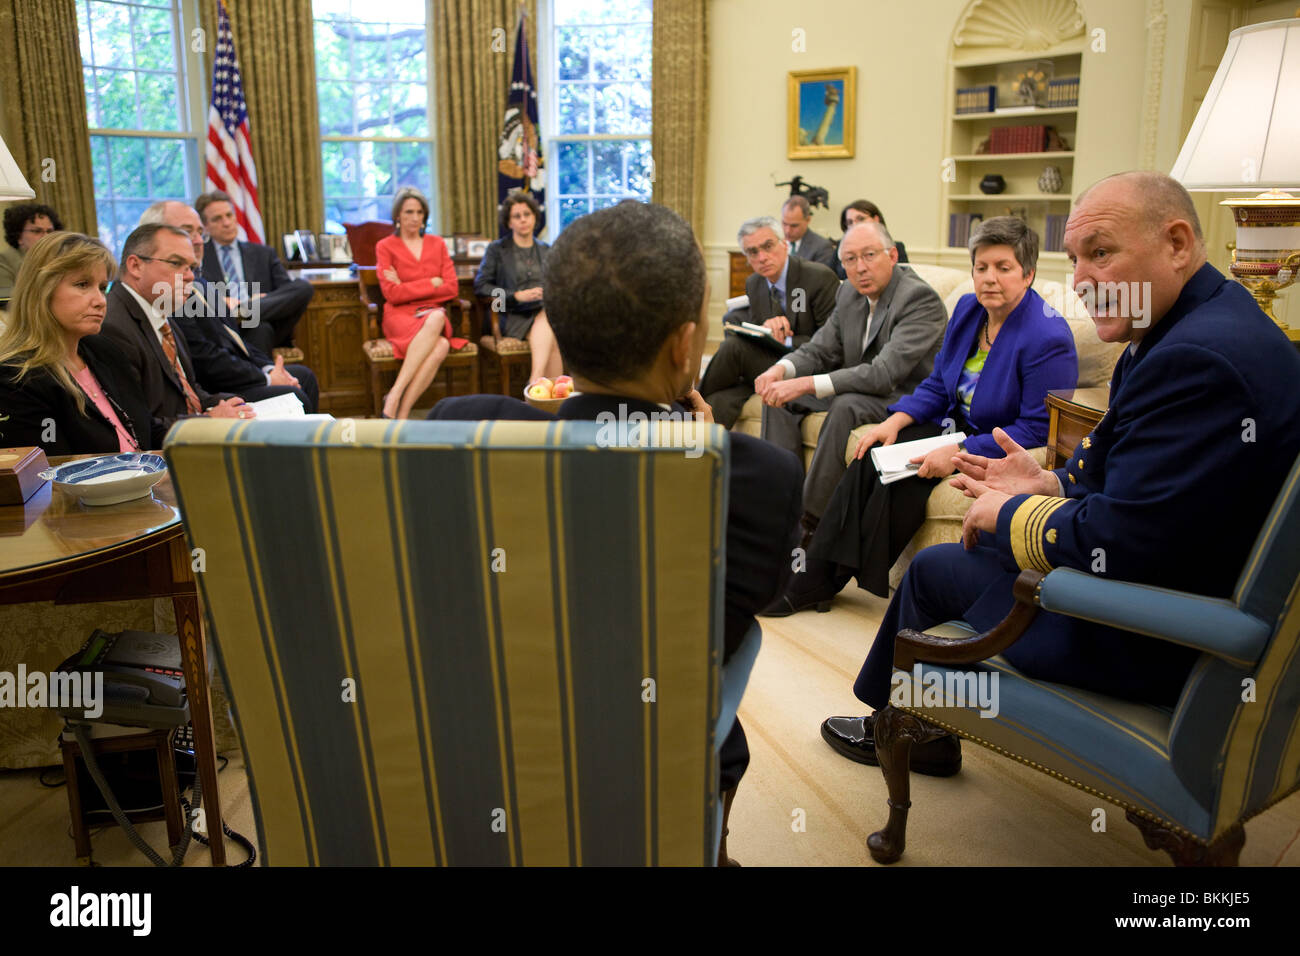 Obama rencontre avec l'amiral Thad Allen W., commandant de la Garde côtière des États-Unis et d'autres fonctionnaires de l'administration Banque D'Images